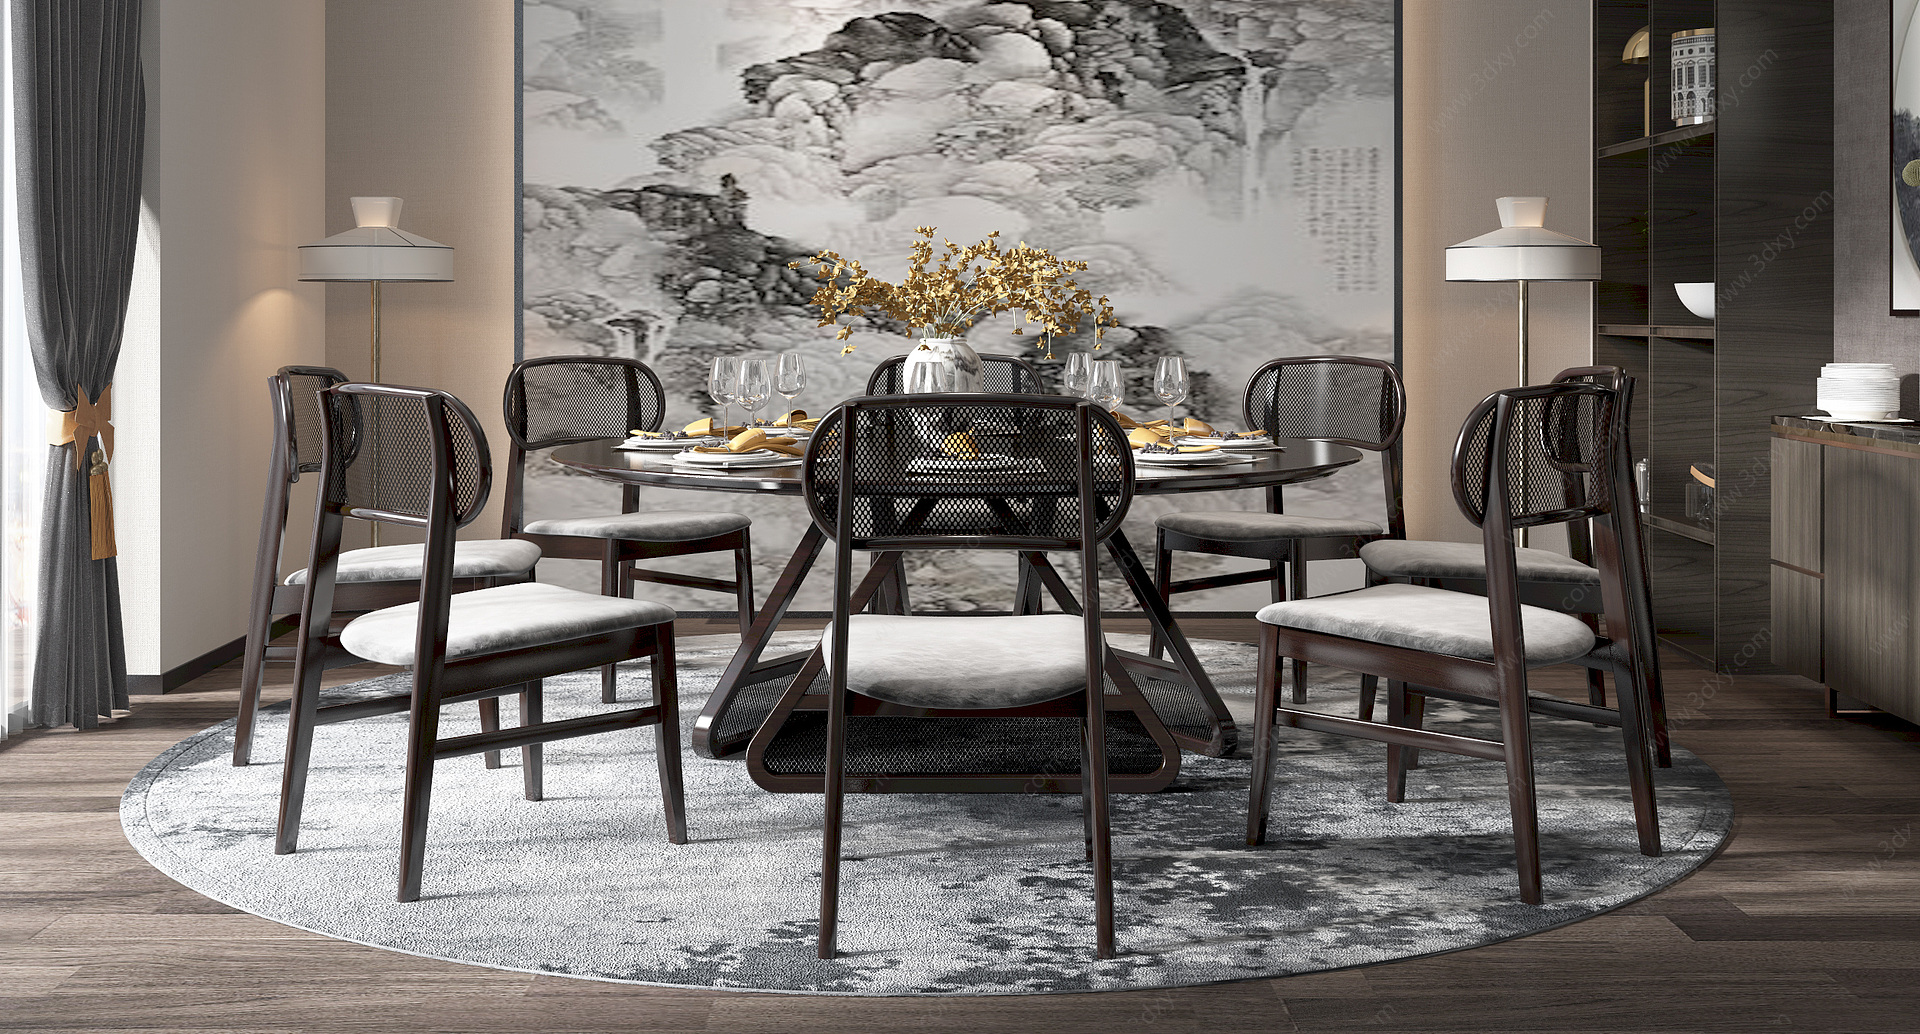 新中式圆餐厅圆餐桌餐椅3D模型